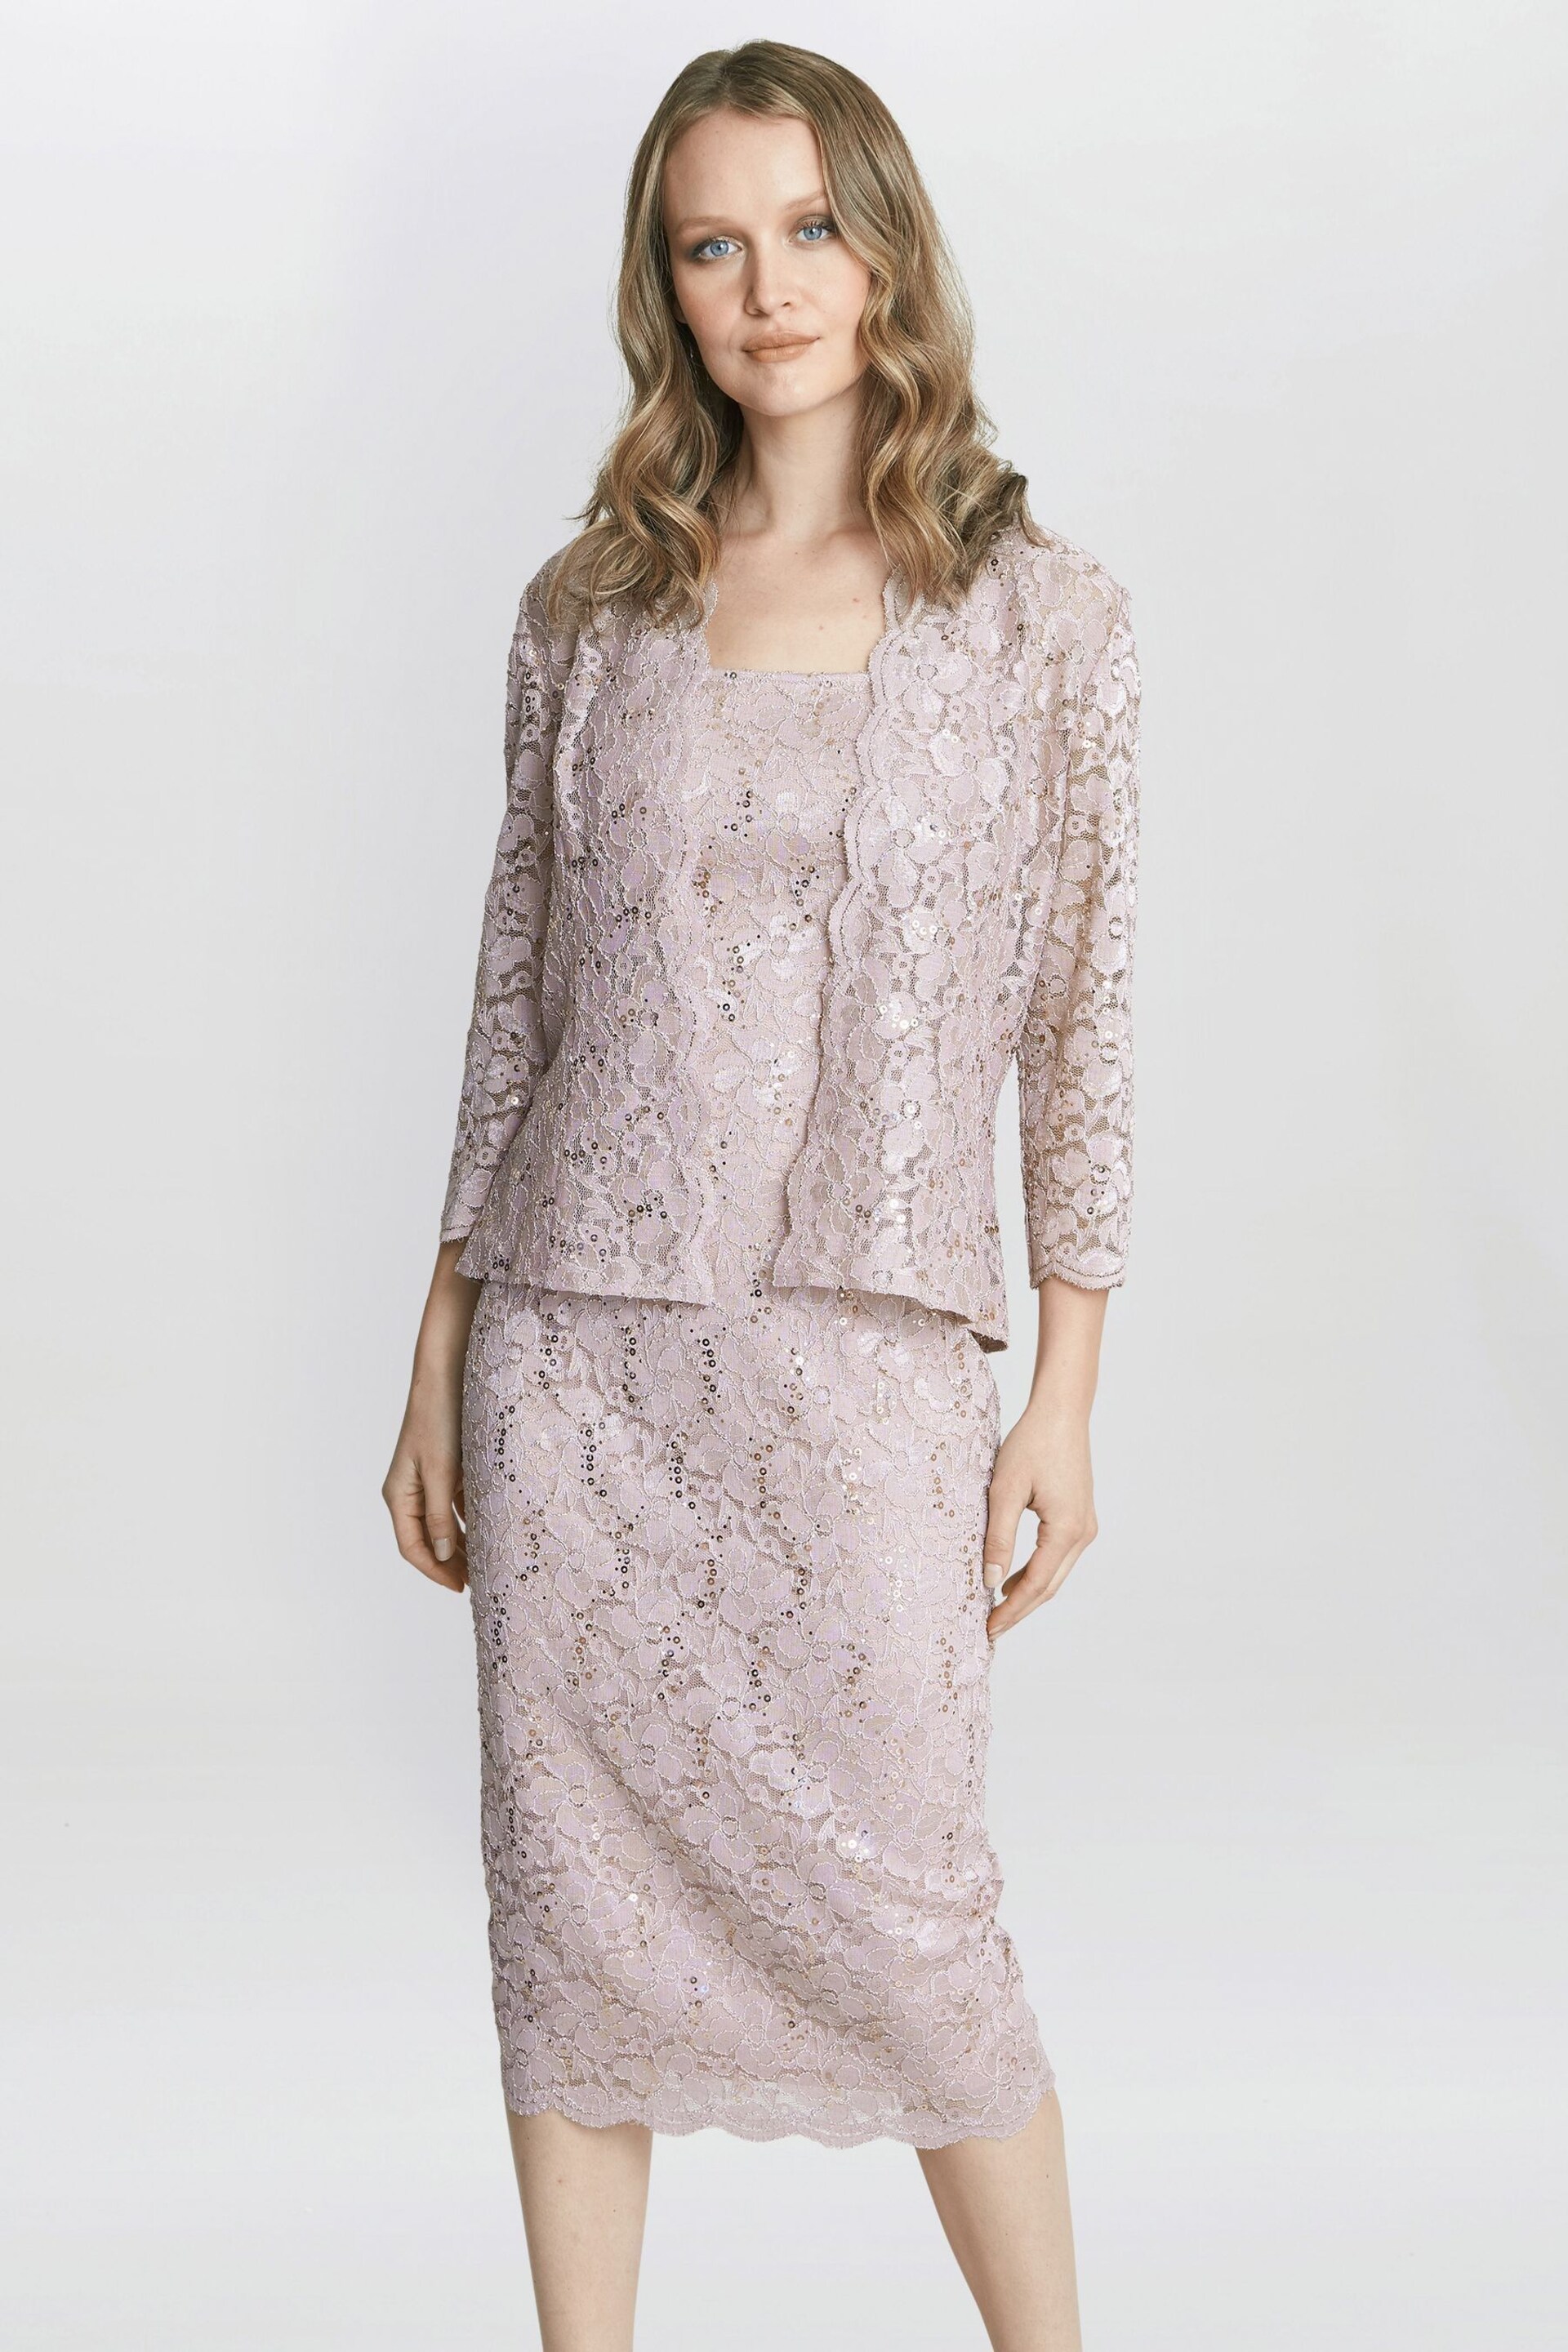 Gina Bacconi Pink Kayla Lace Midi-Length Jacket And Dress - Image 1 of 6